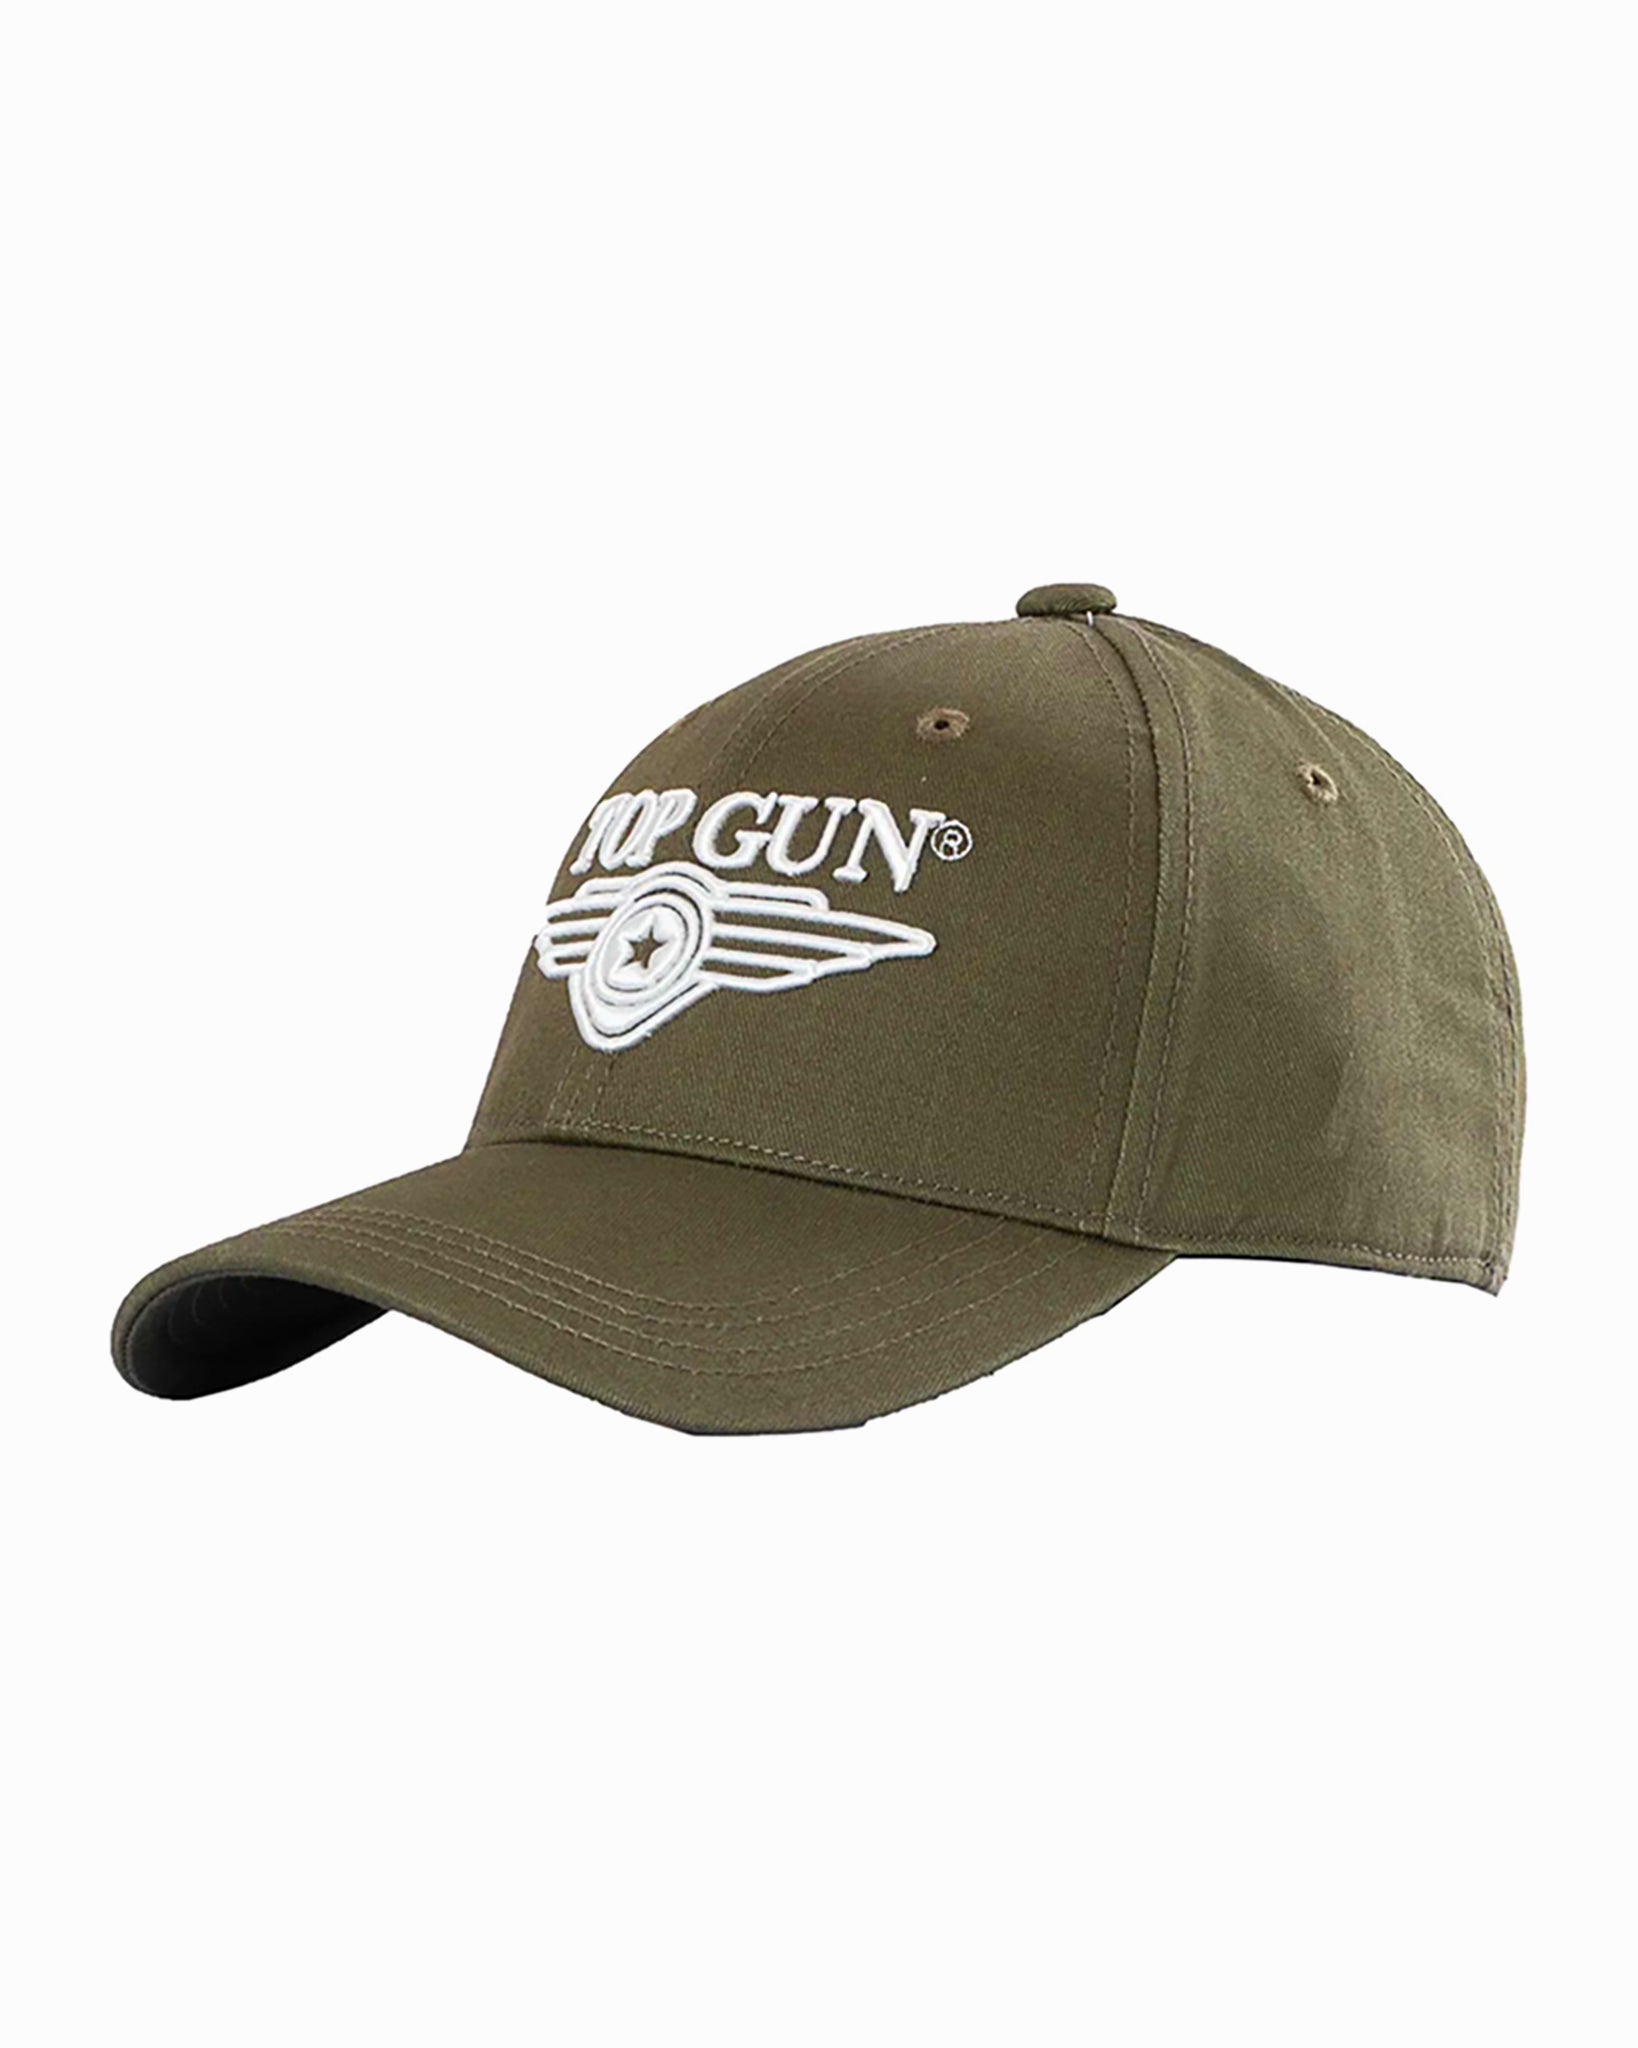 TOP GUN® Store Gun – 3D LOGO CAP WINGS Top